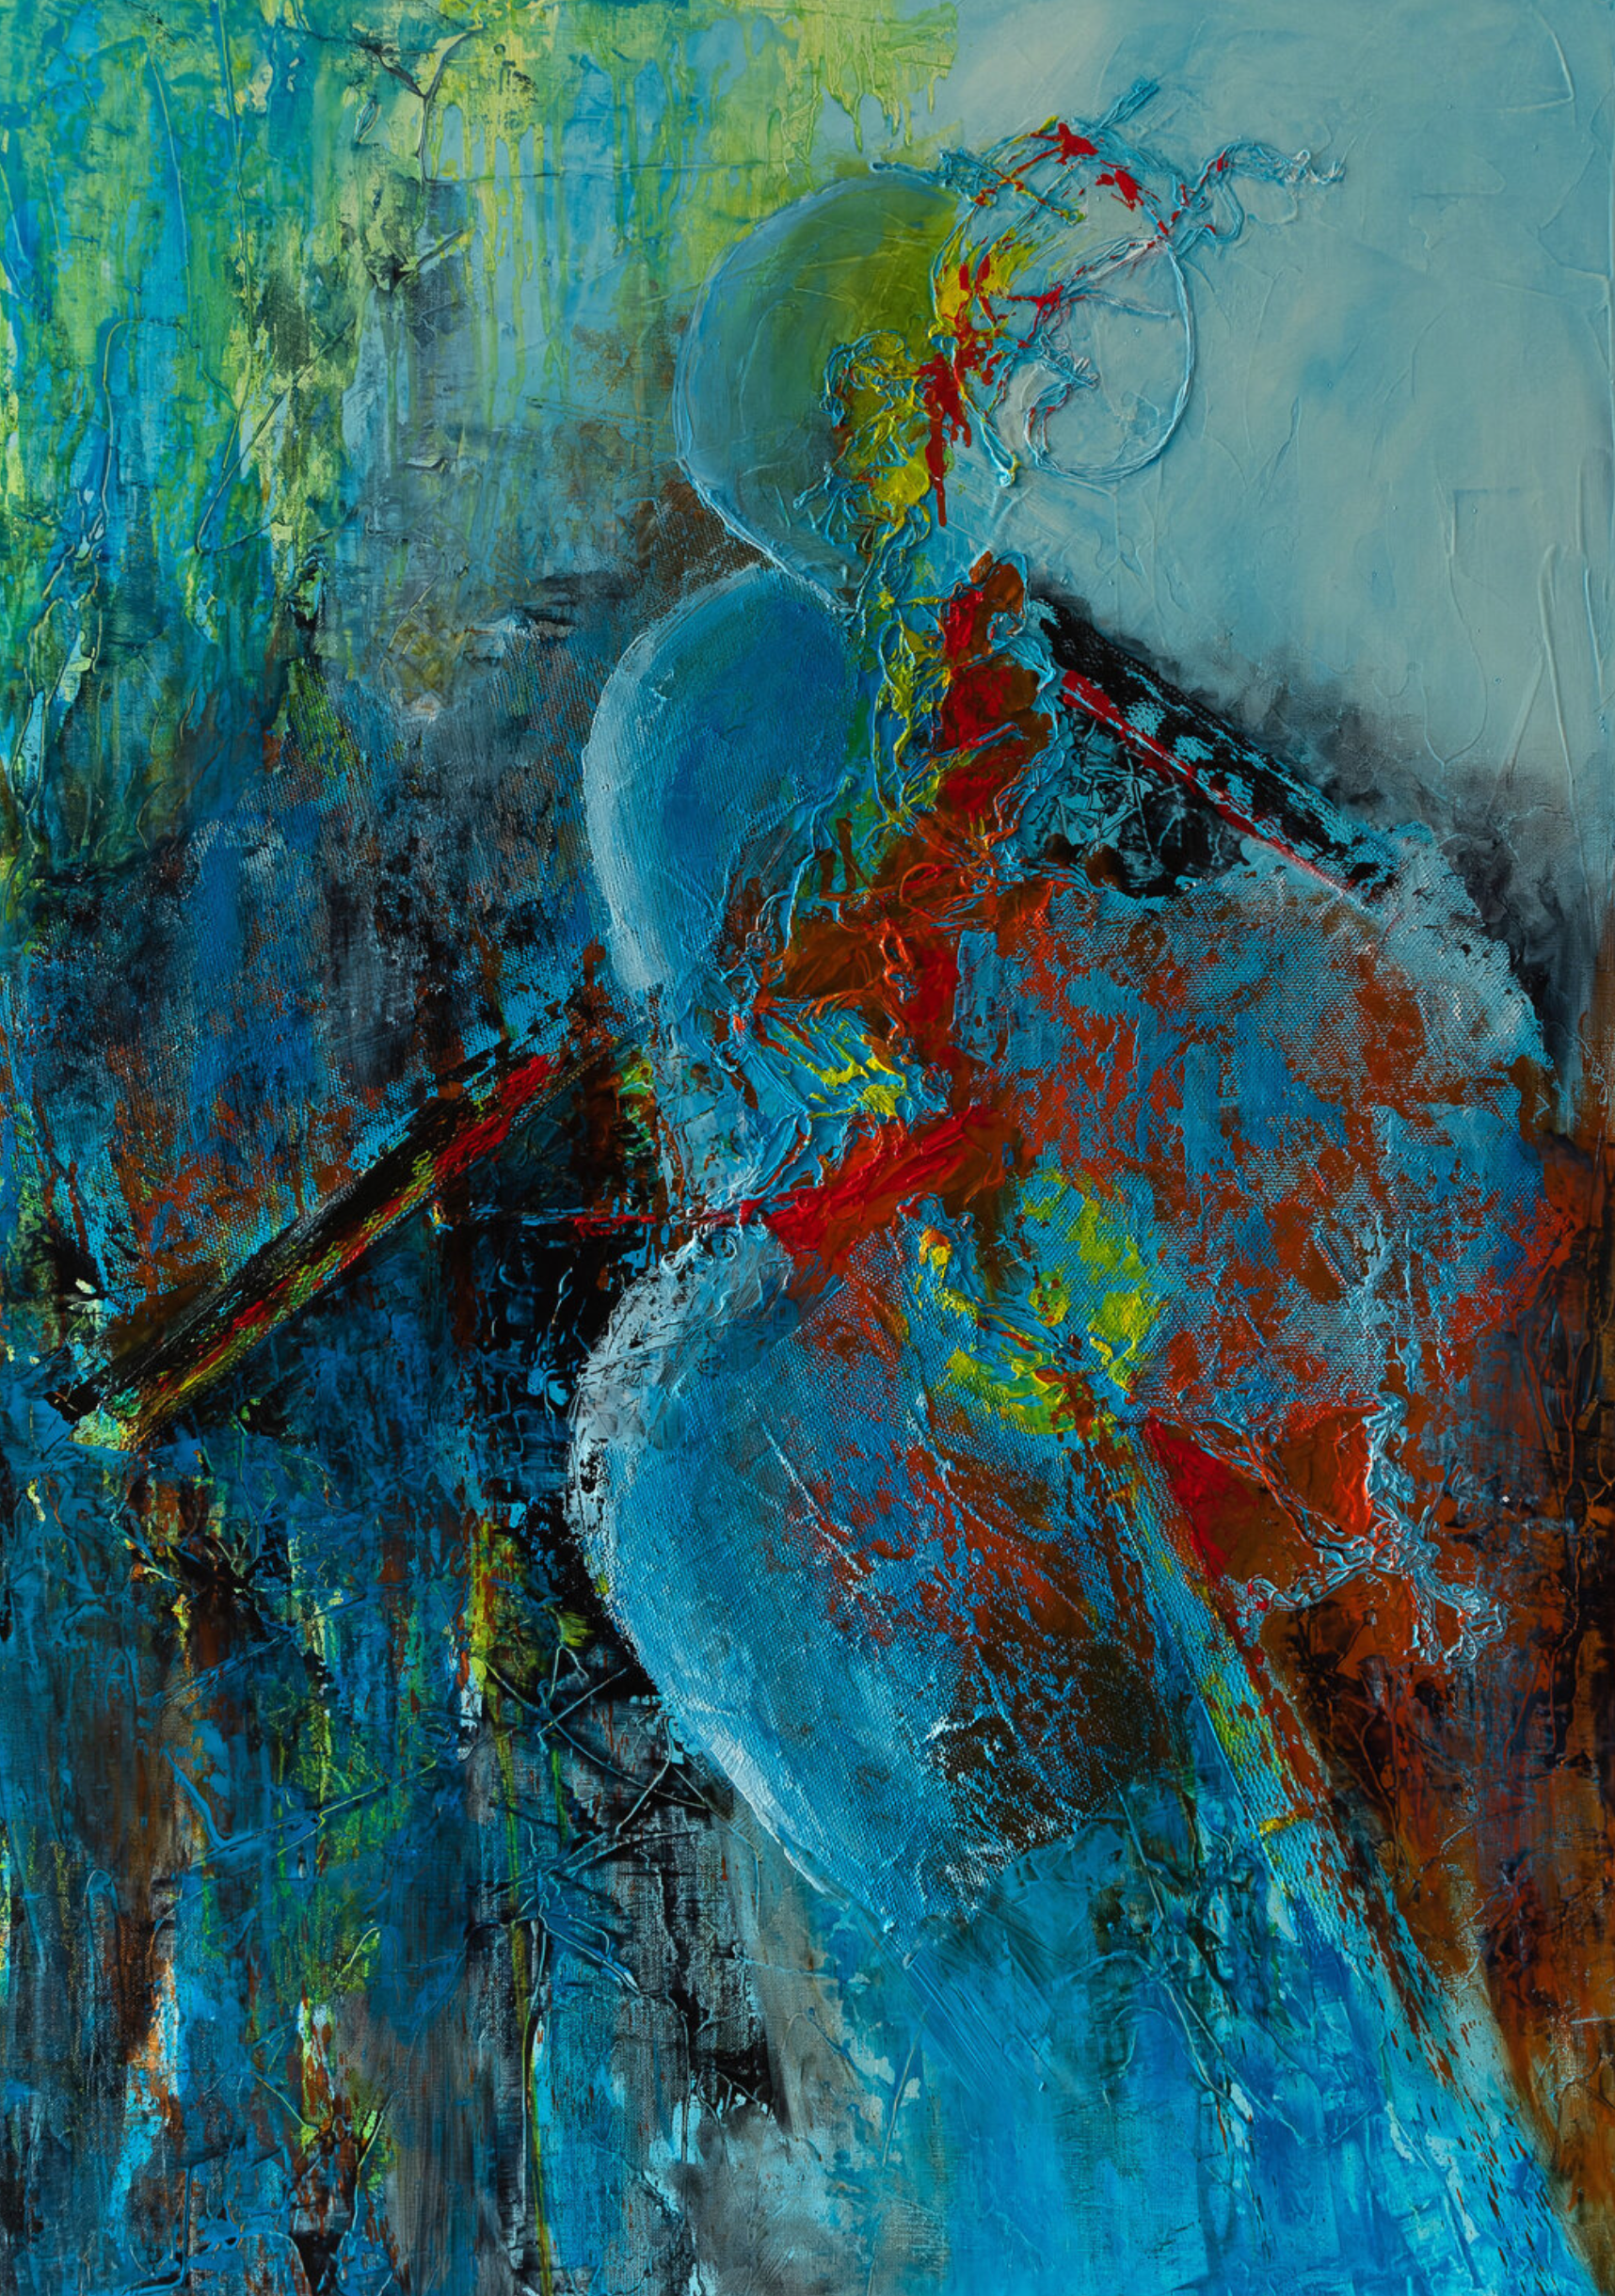 Il quadro astratto "Salomé" di Françoise Dugourd-Caput mostra Al centro di un movimento bluastro e arancione, una vaga silhouette femminile, appena delineata, gioca con le forme e i materiali, conferendo all'insieme astratto quel tocco di eleganza e sensualità